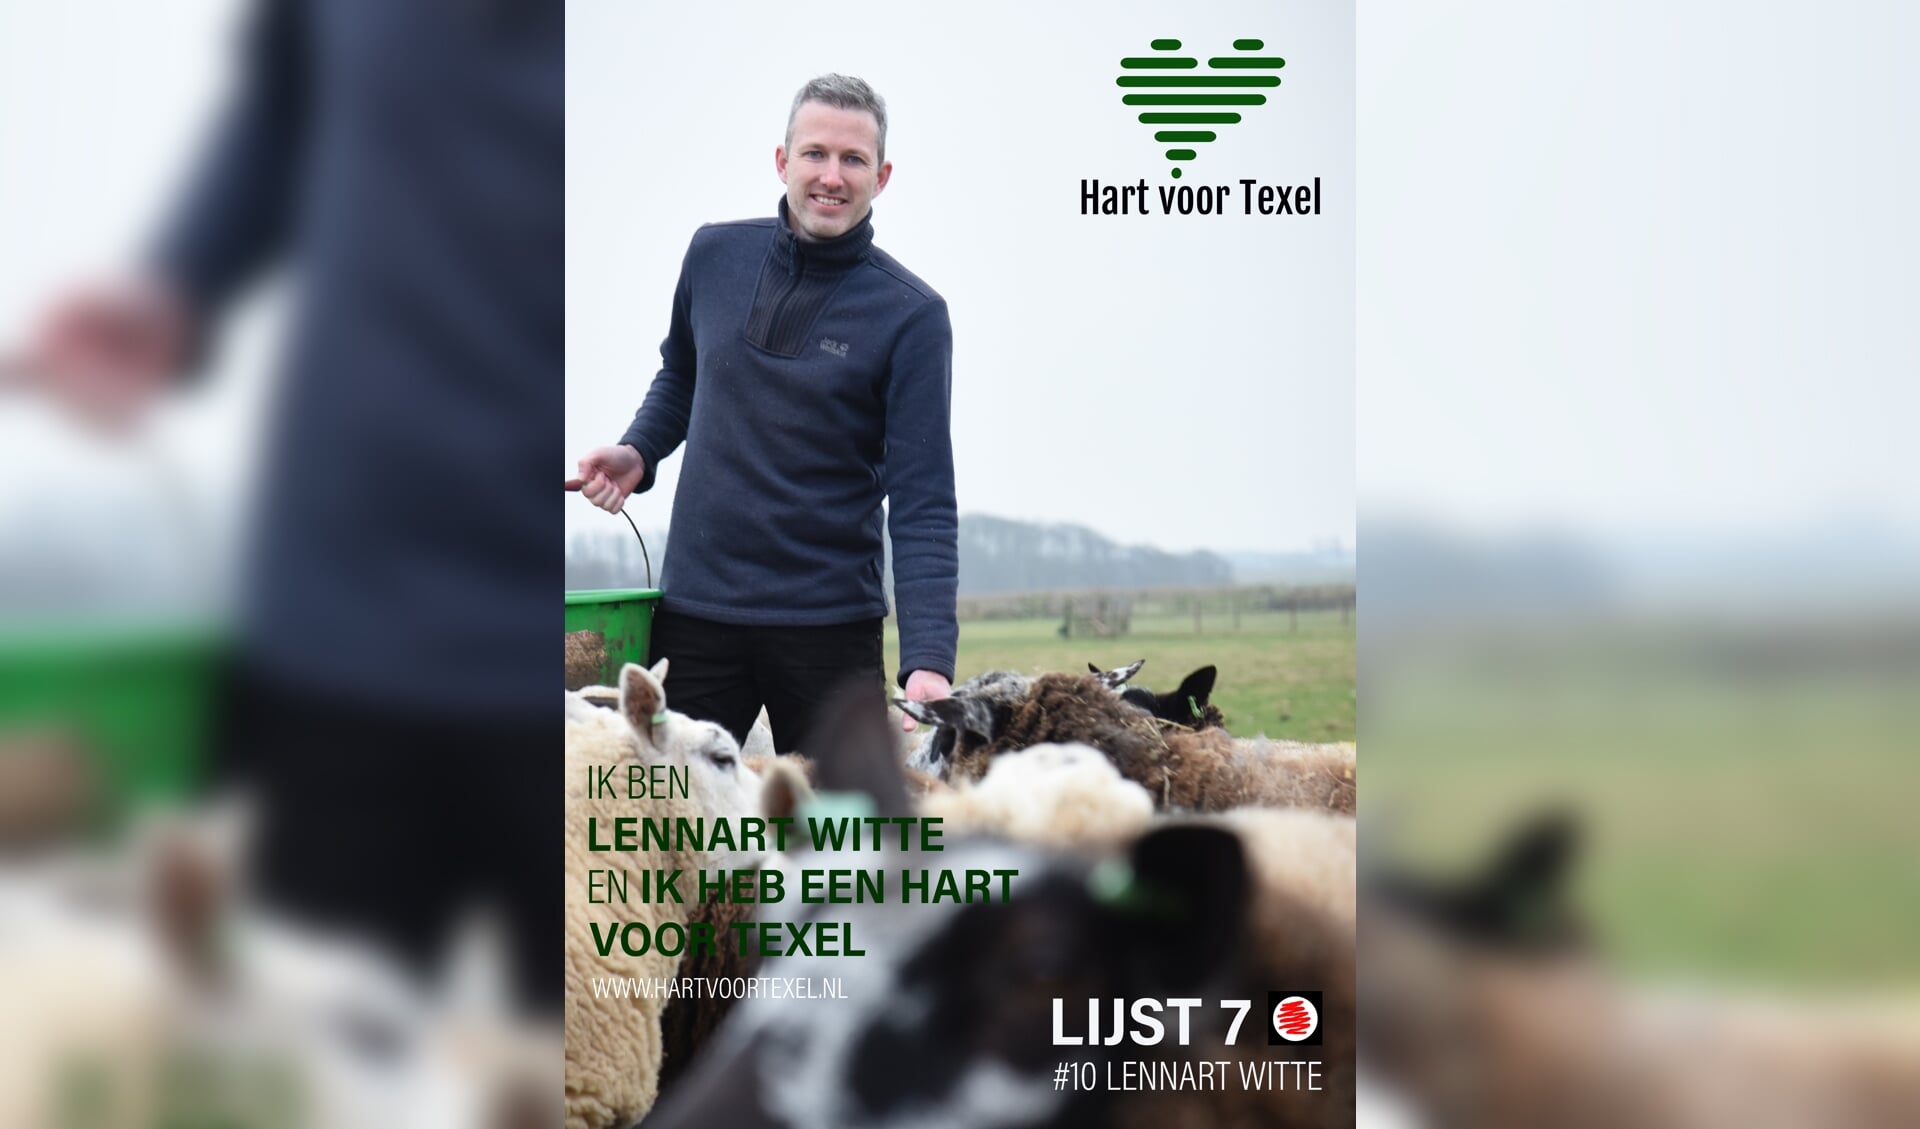 De nummer 10 op de kandidatenlijst van Hart voor Texel: Lennart Witte